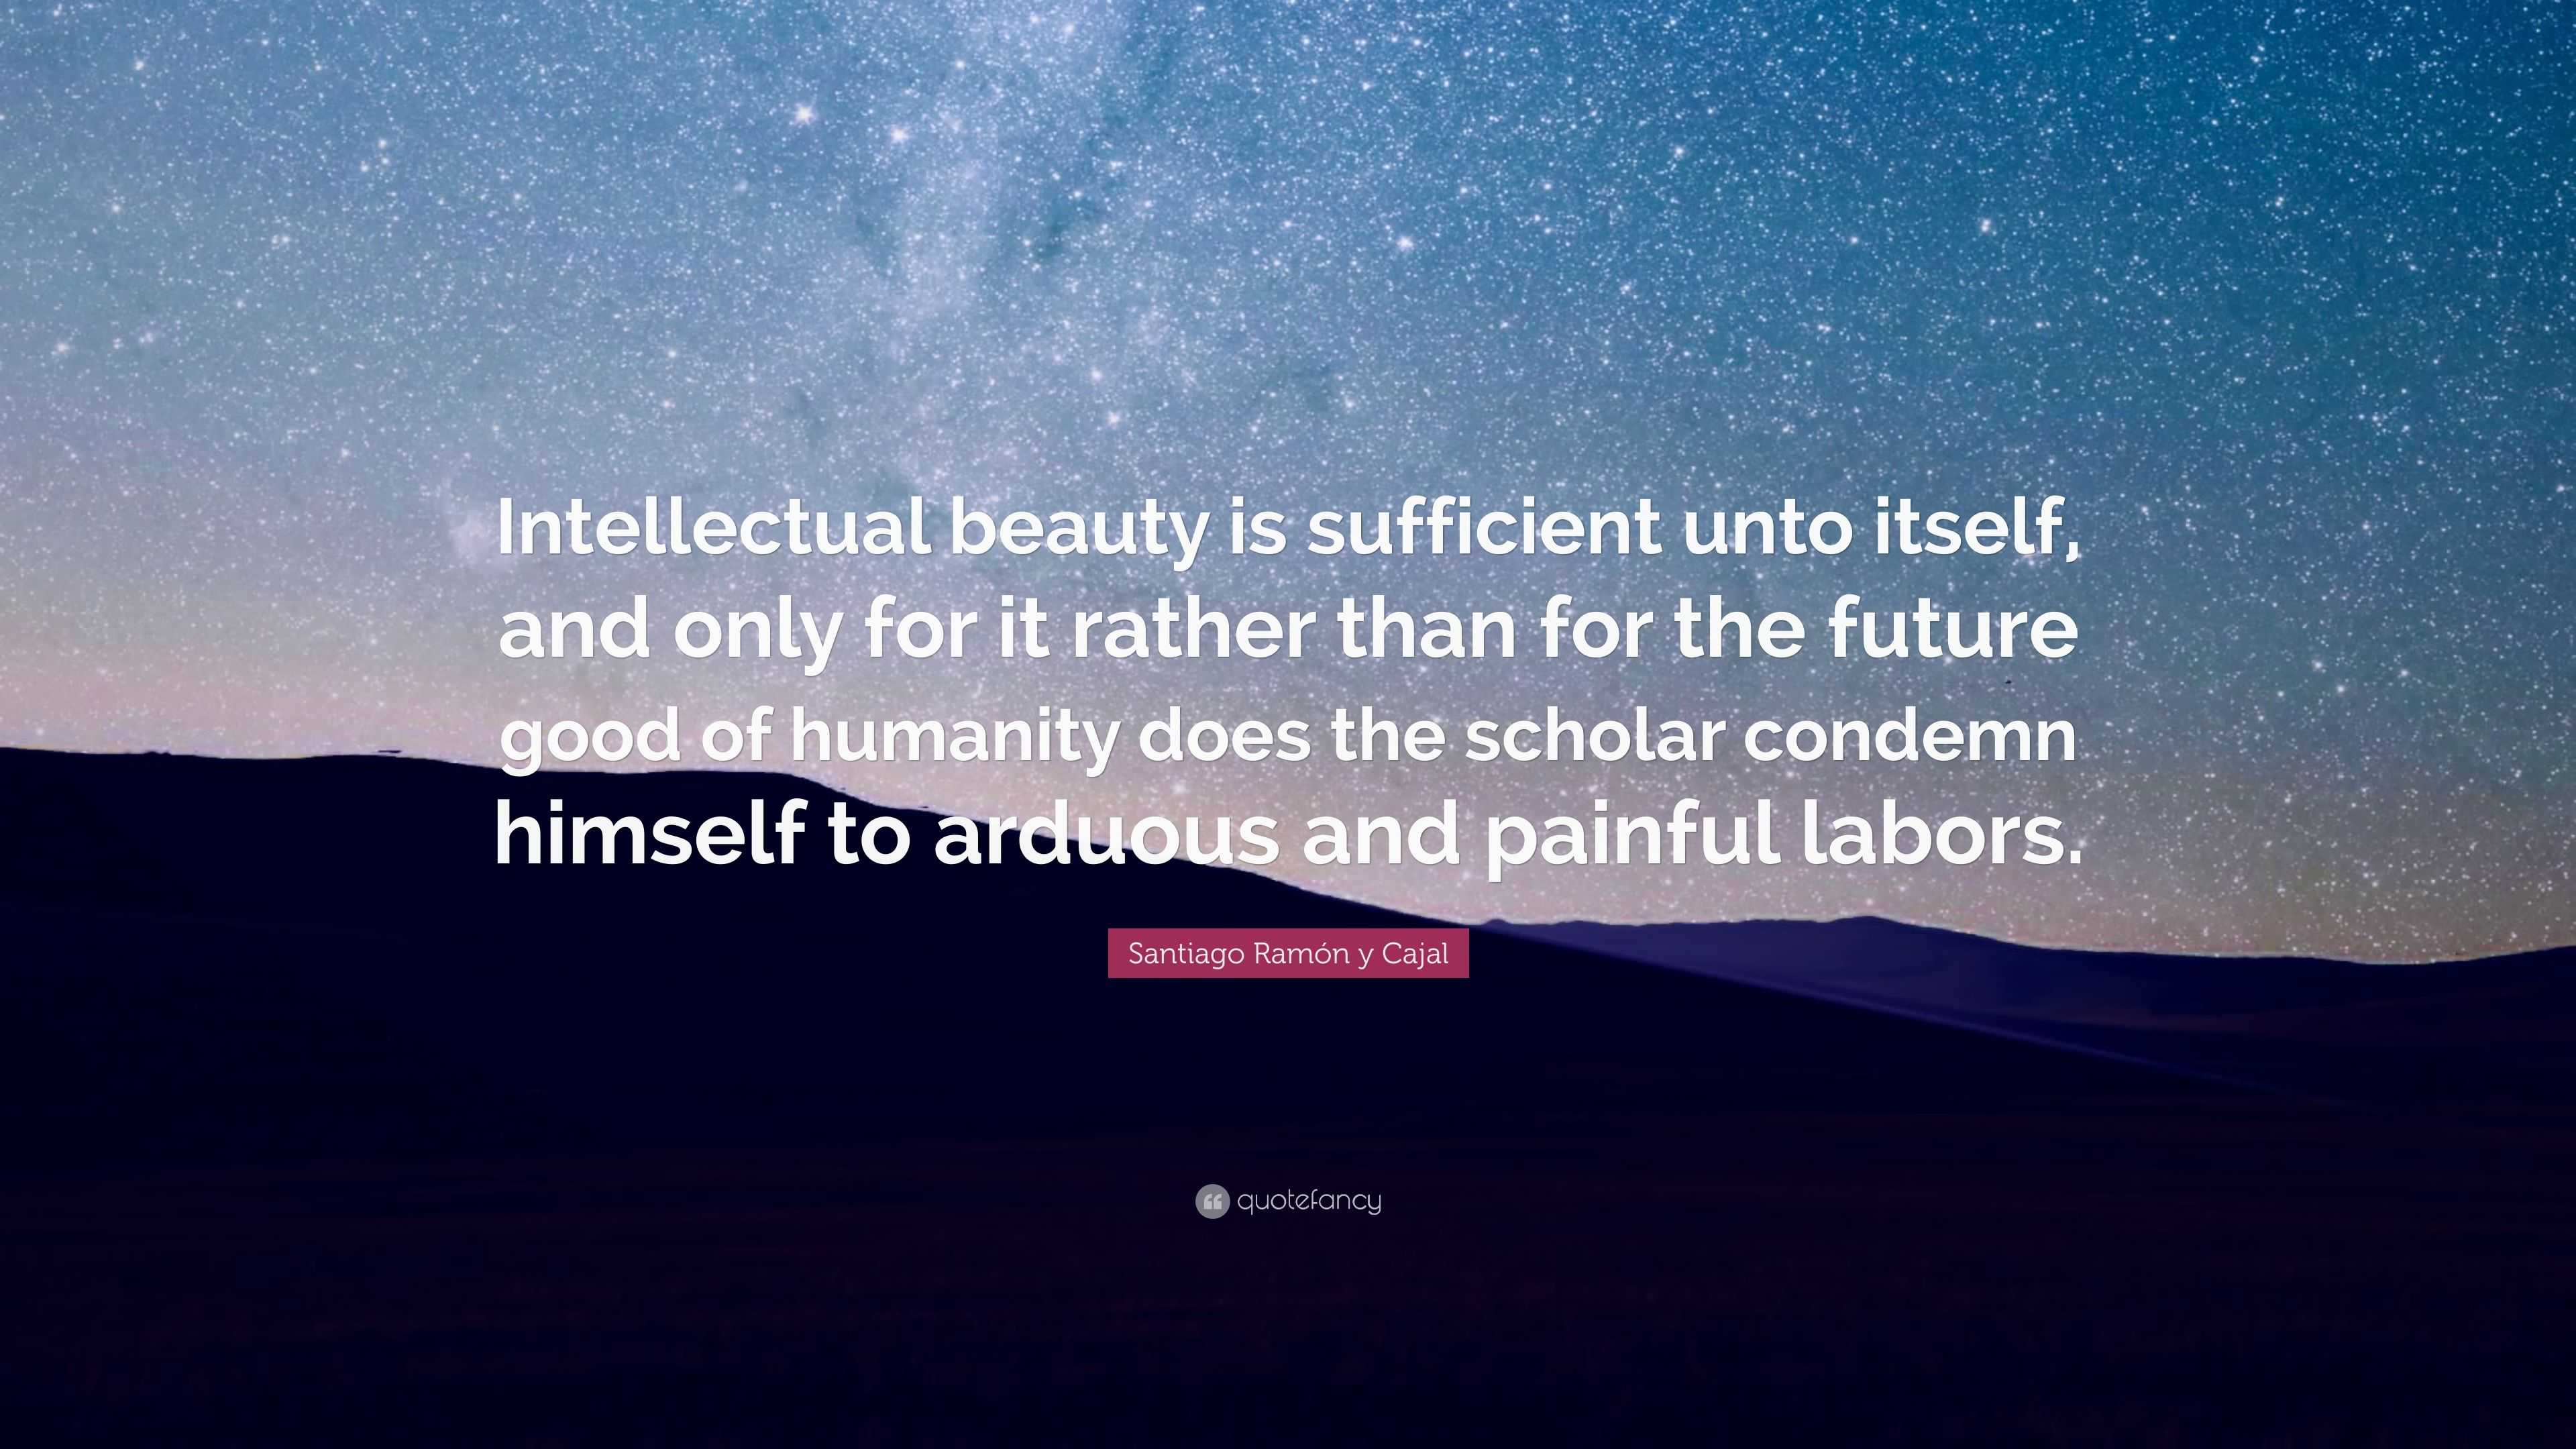 Santiago Ramón y Cajal Quote “Intellectual beauty is sufficient unto